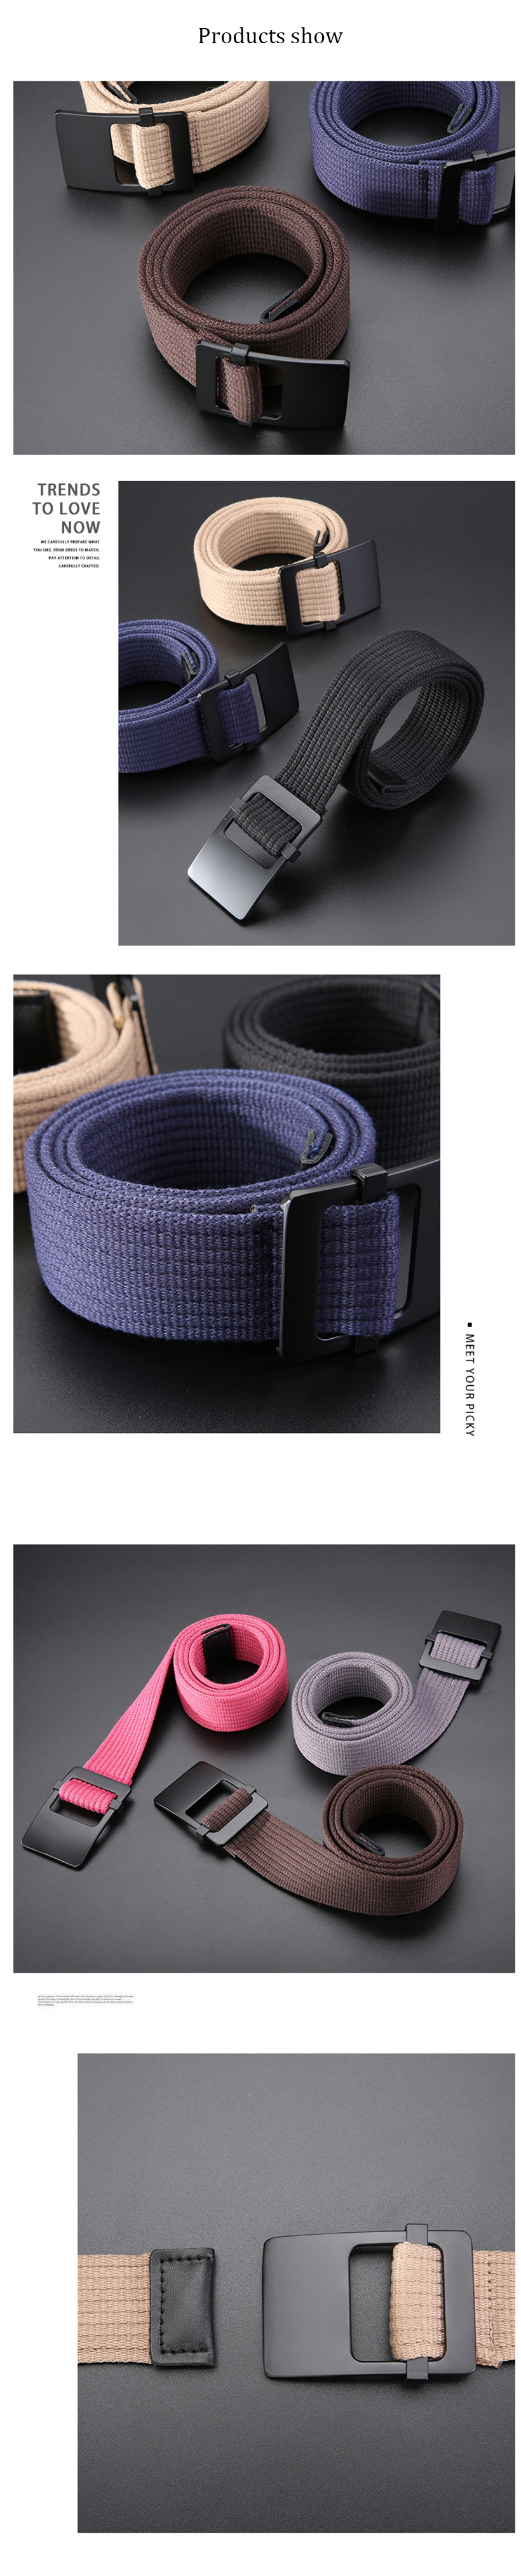 ZANLURE-120cm-Adjustable-Canvas-Tactical-Belt-Leisure-Waist-Belts-with-Zinc-Alloy-Buckle-1568913-2